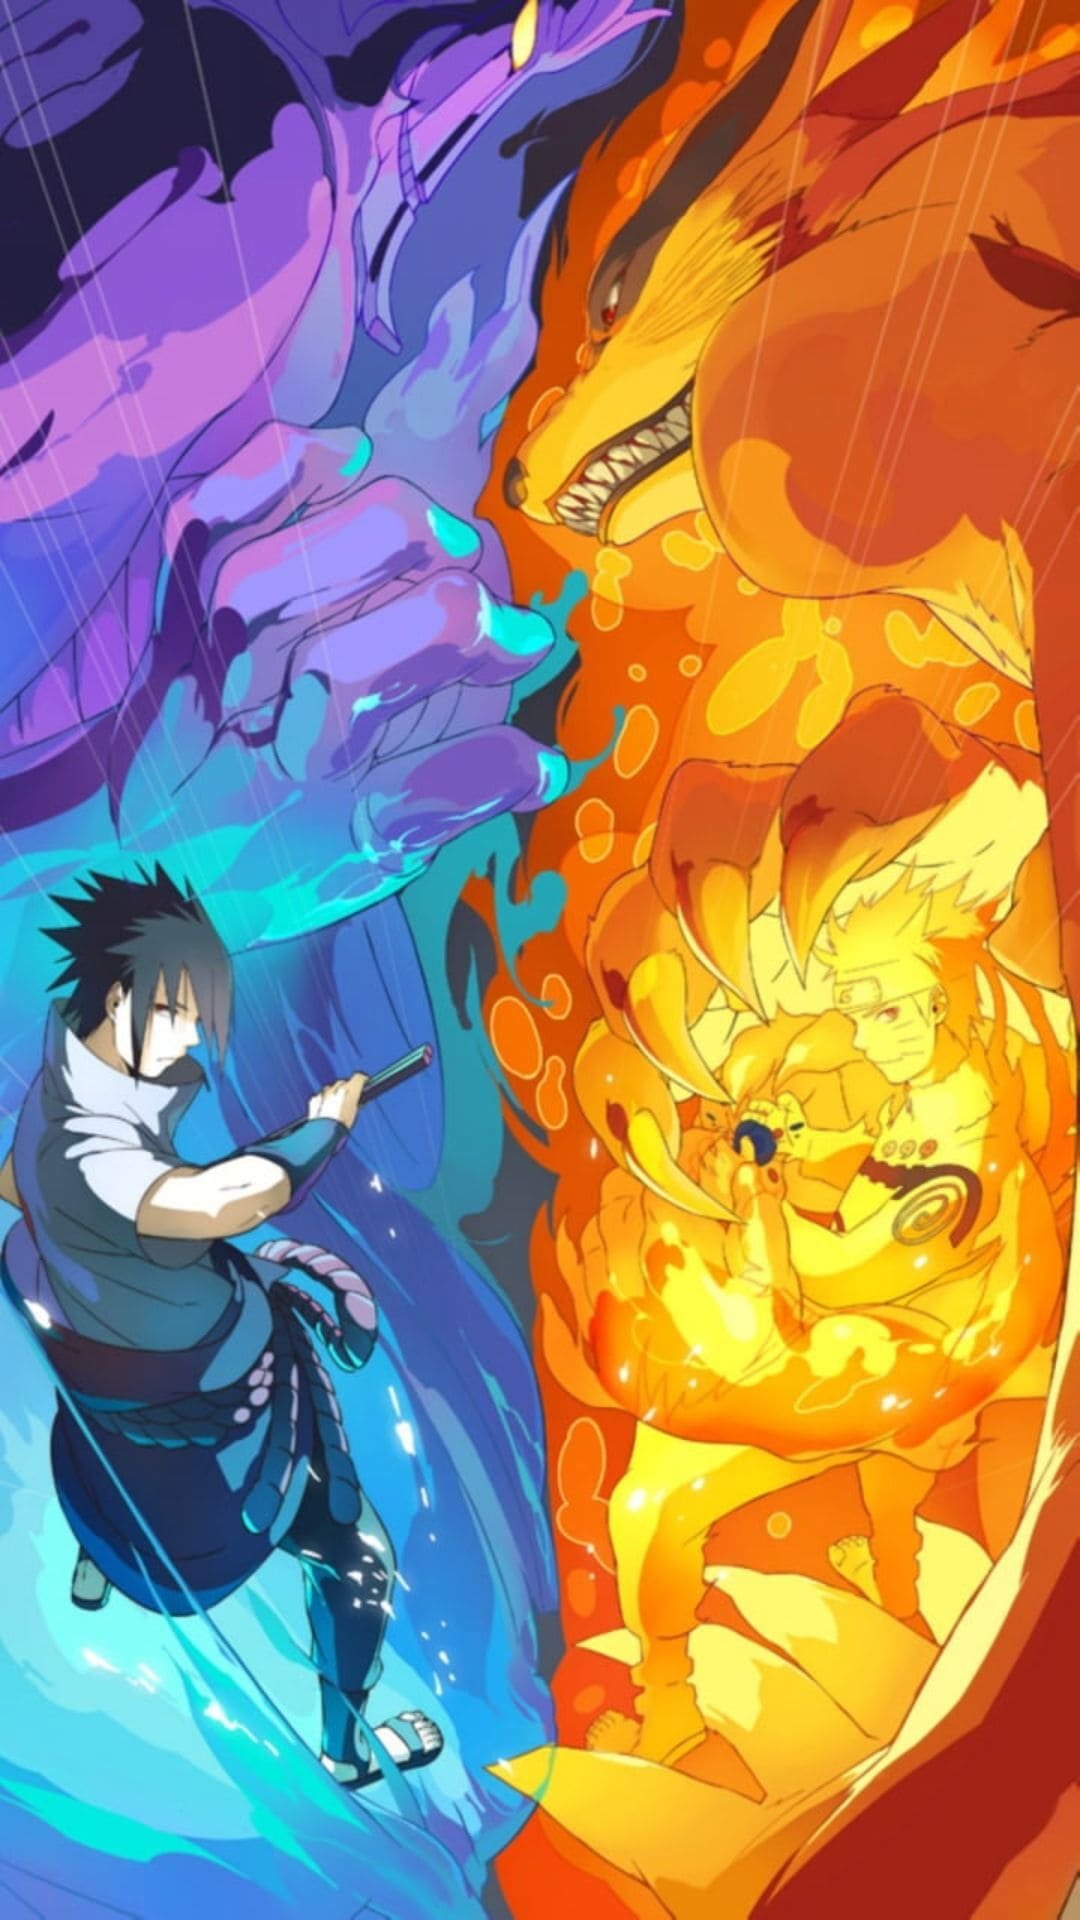 Sasuke Naruto iPhone Wallpaper 4k from Naruto Shippuden Anime 28